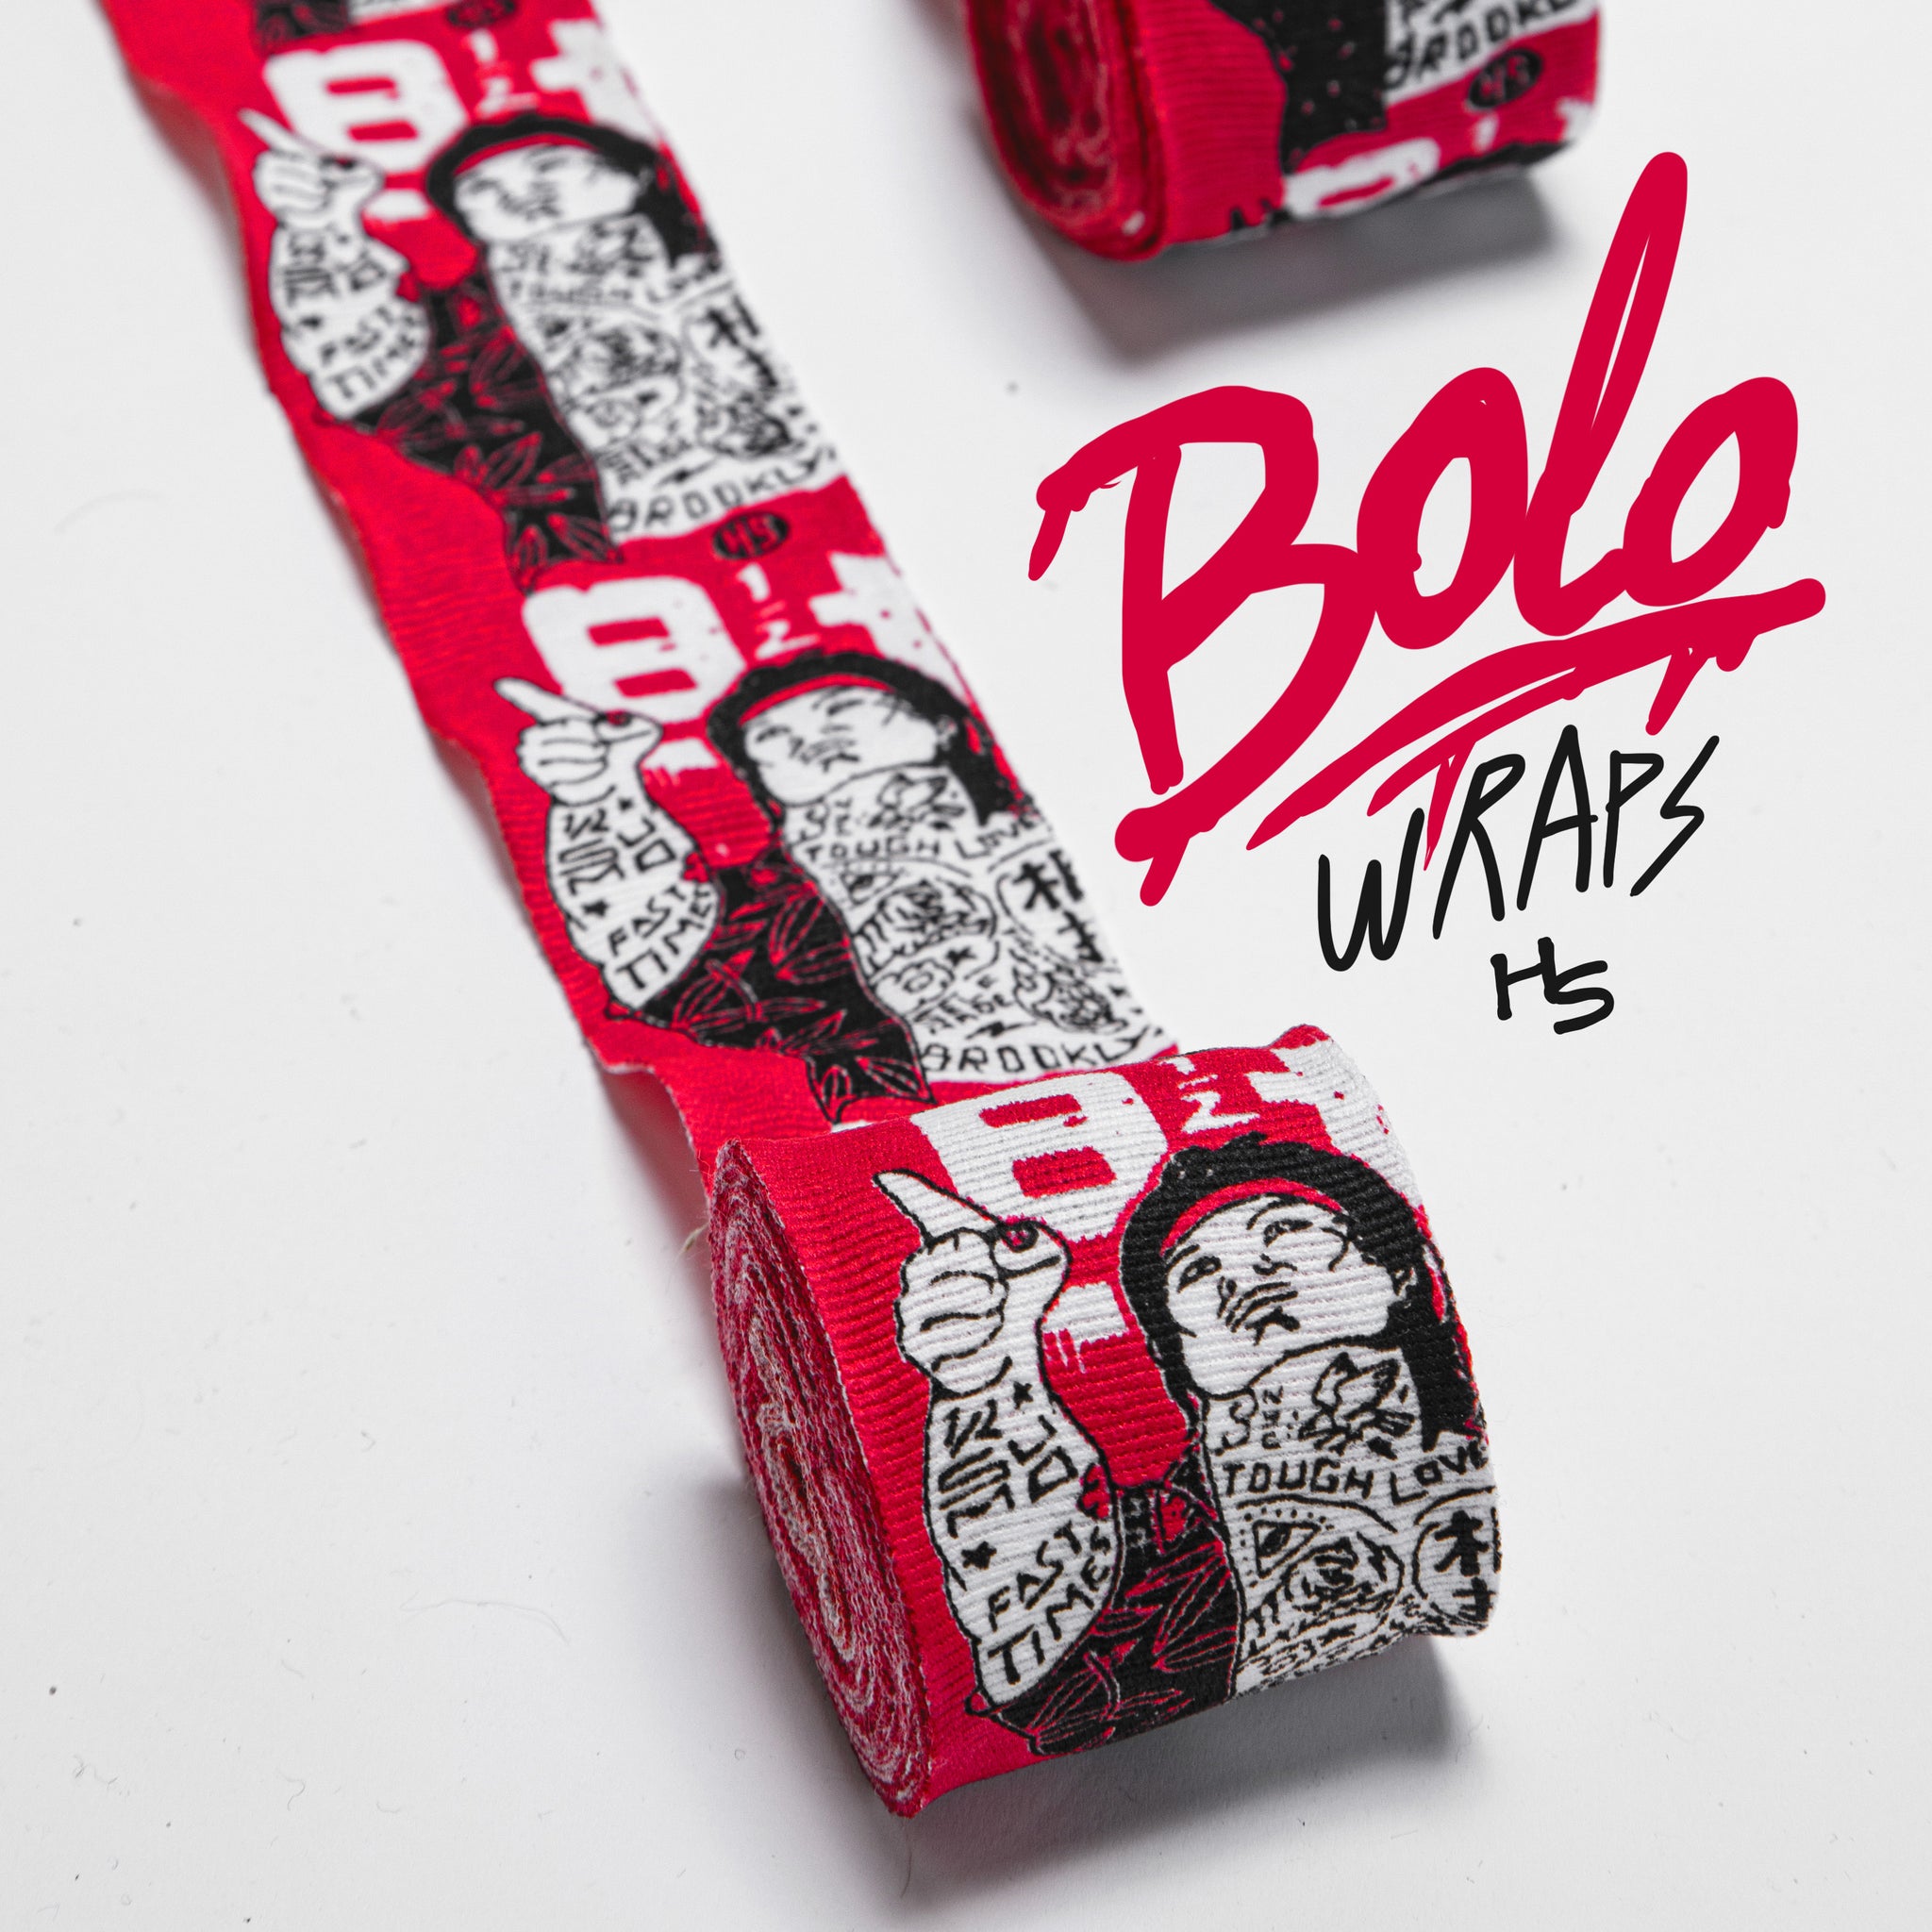 Bolo Hand Wraps